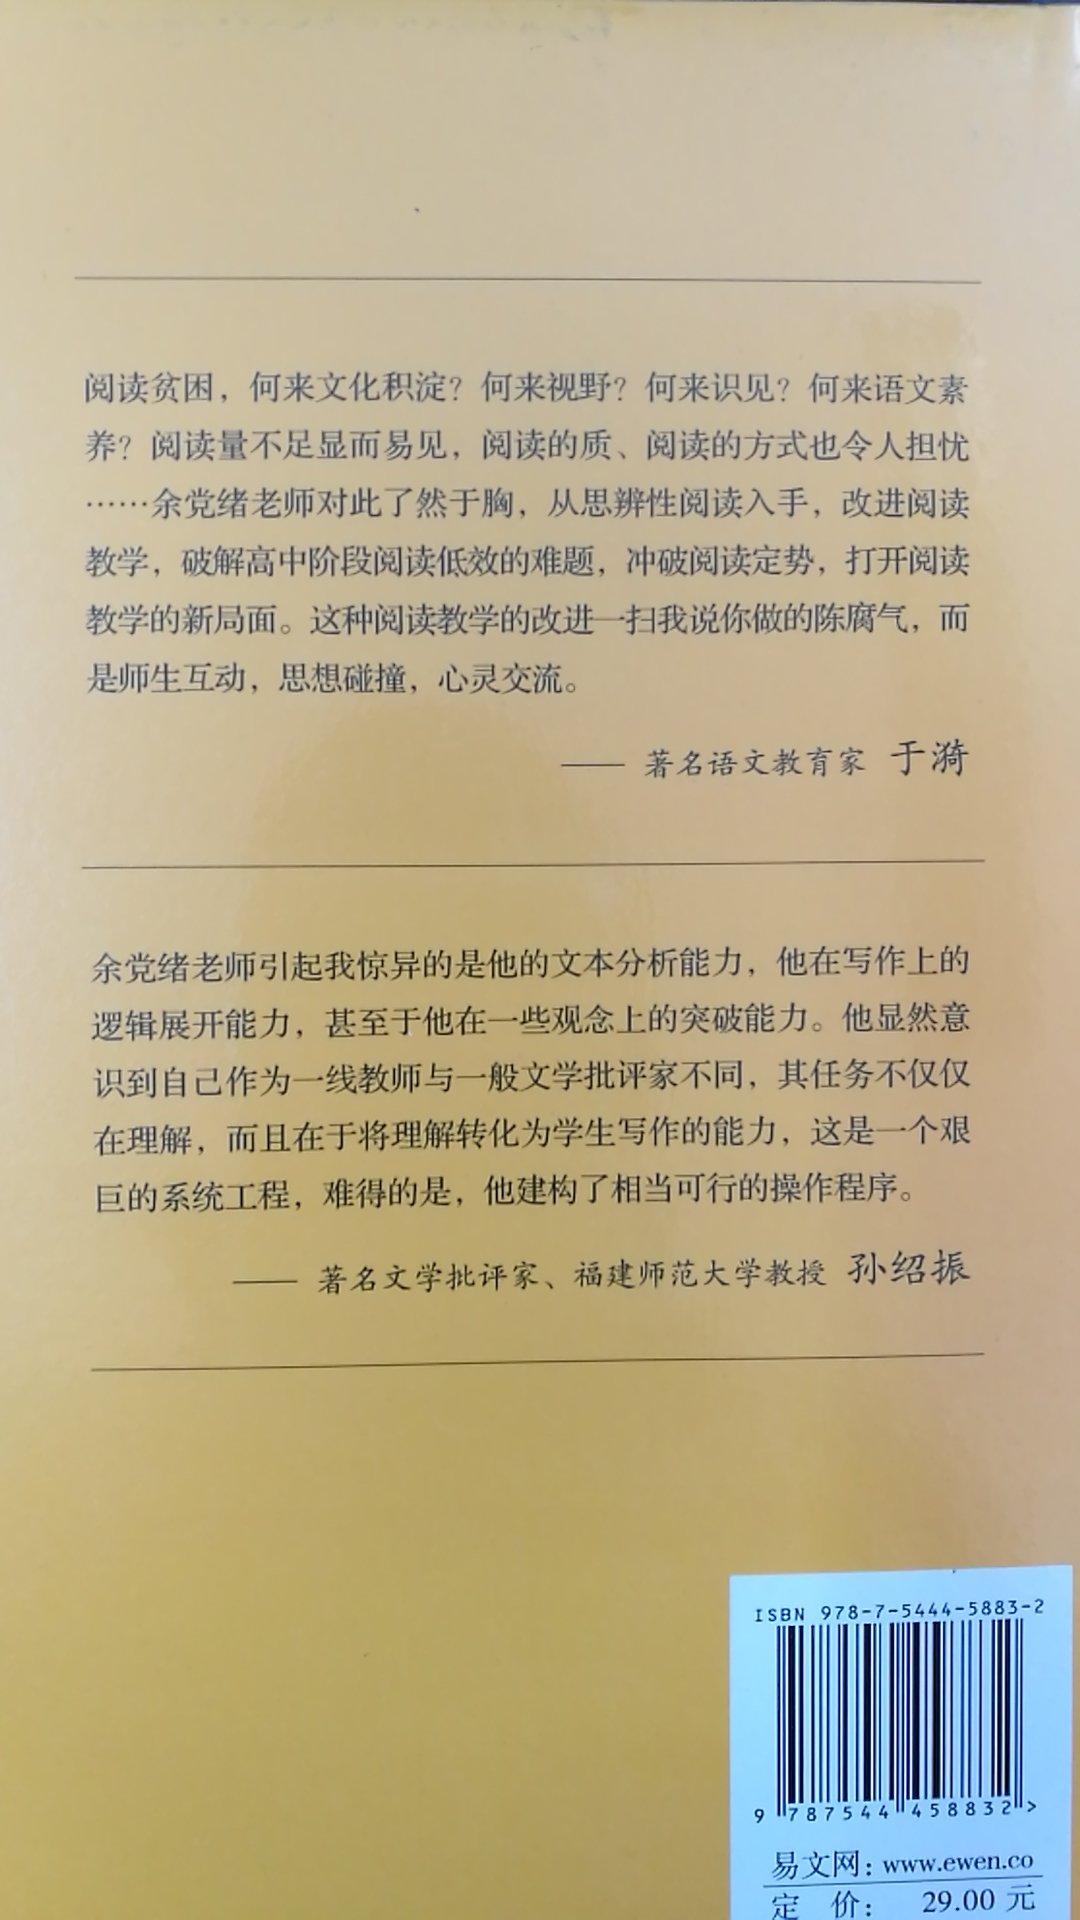 上海老师写的《经典名著的人生智慧》，买来给初中生读，以期提高阅读鉴赏水平。